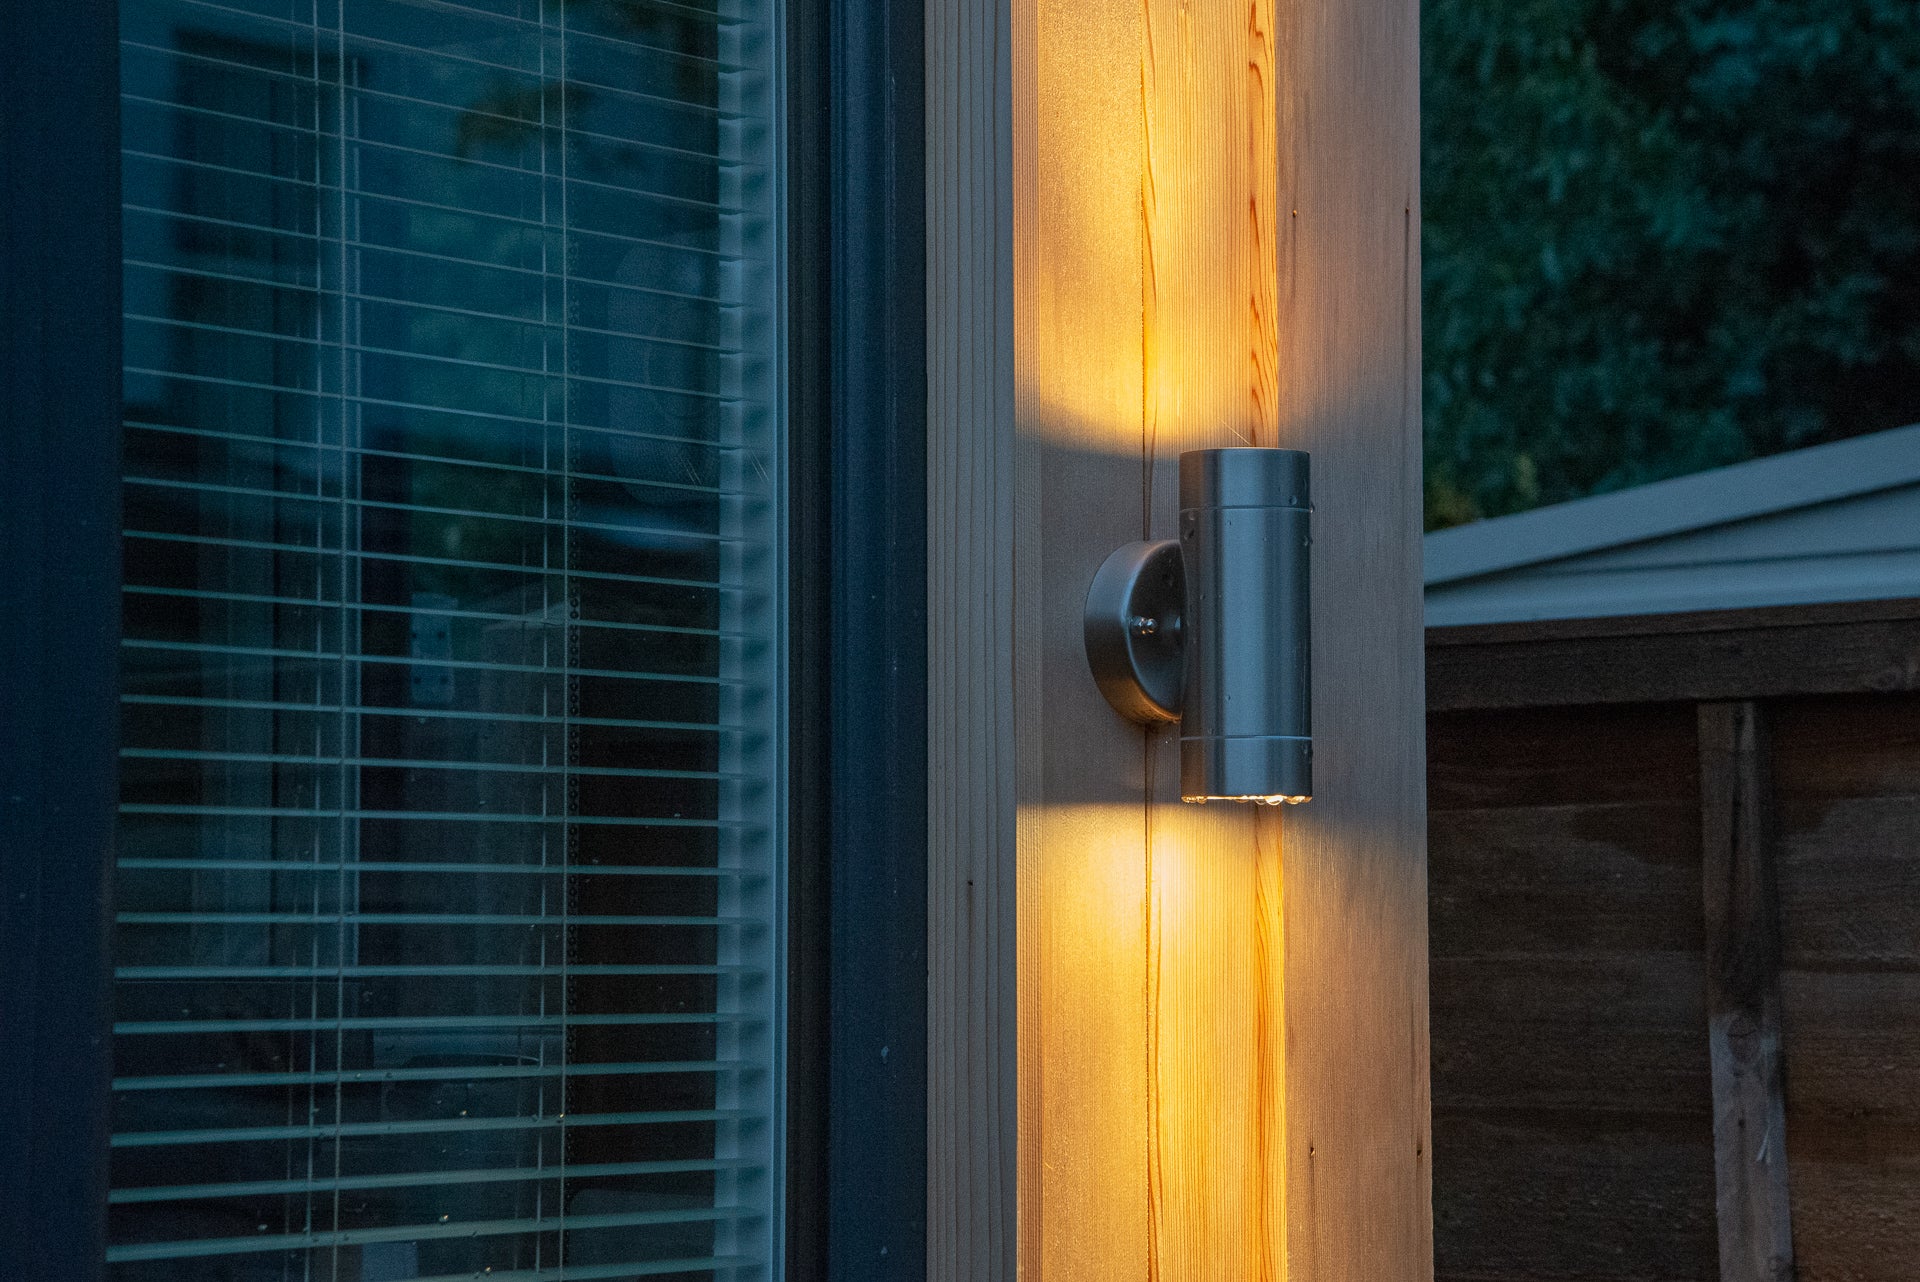 Build a smart home extension external lights